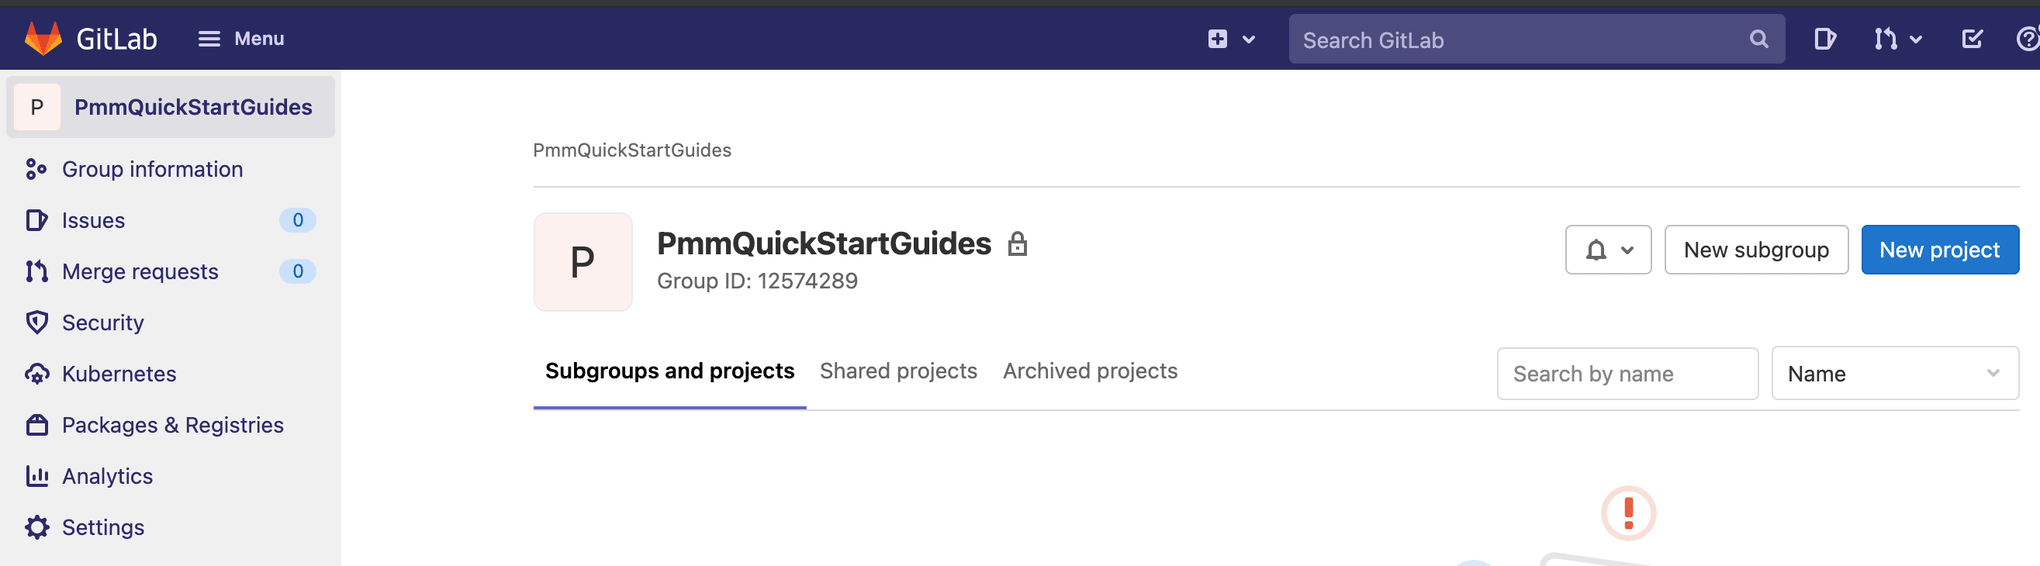 在 GitLab 中导航到创建“新项目”